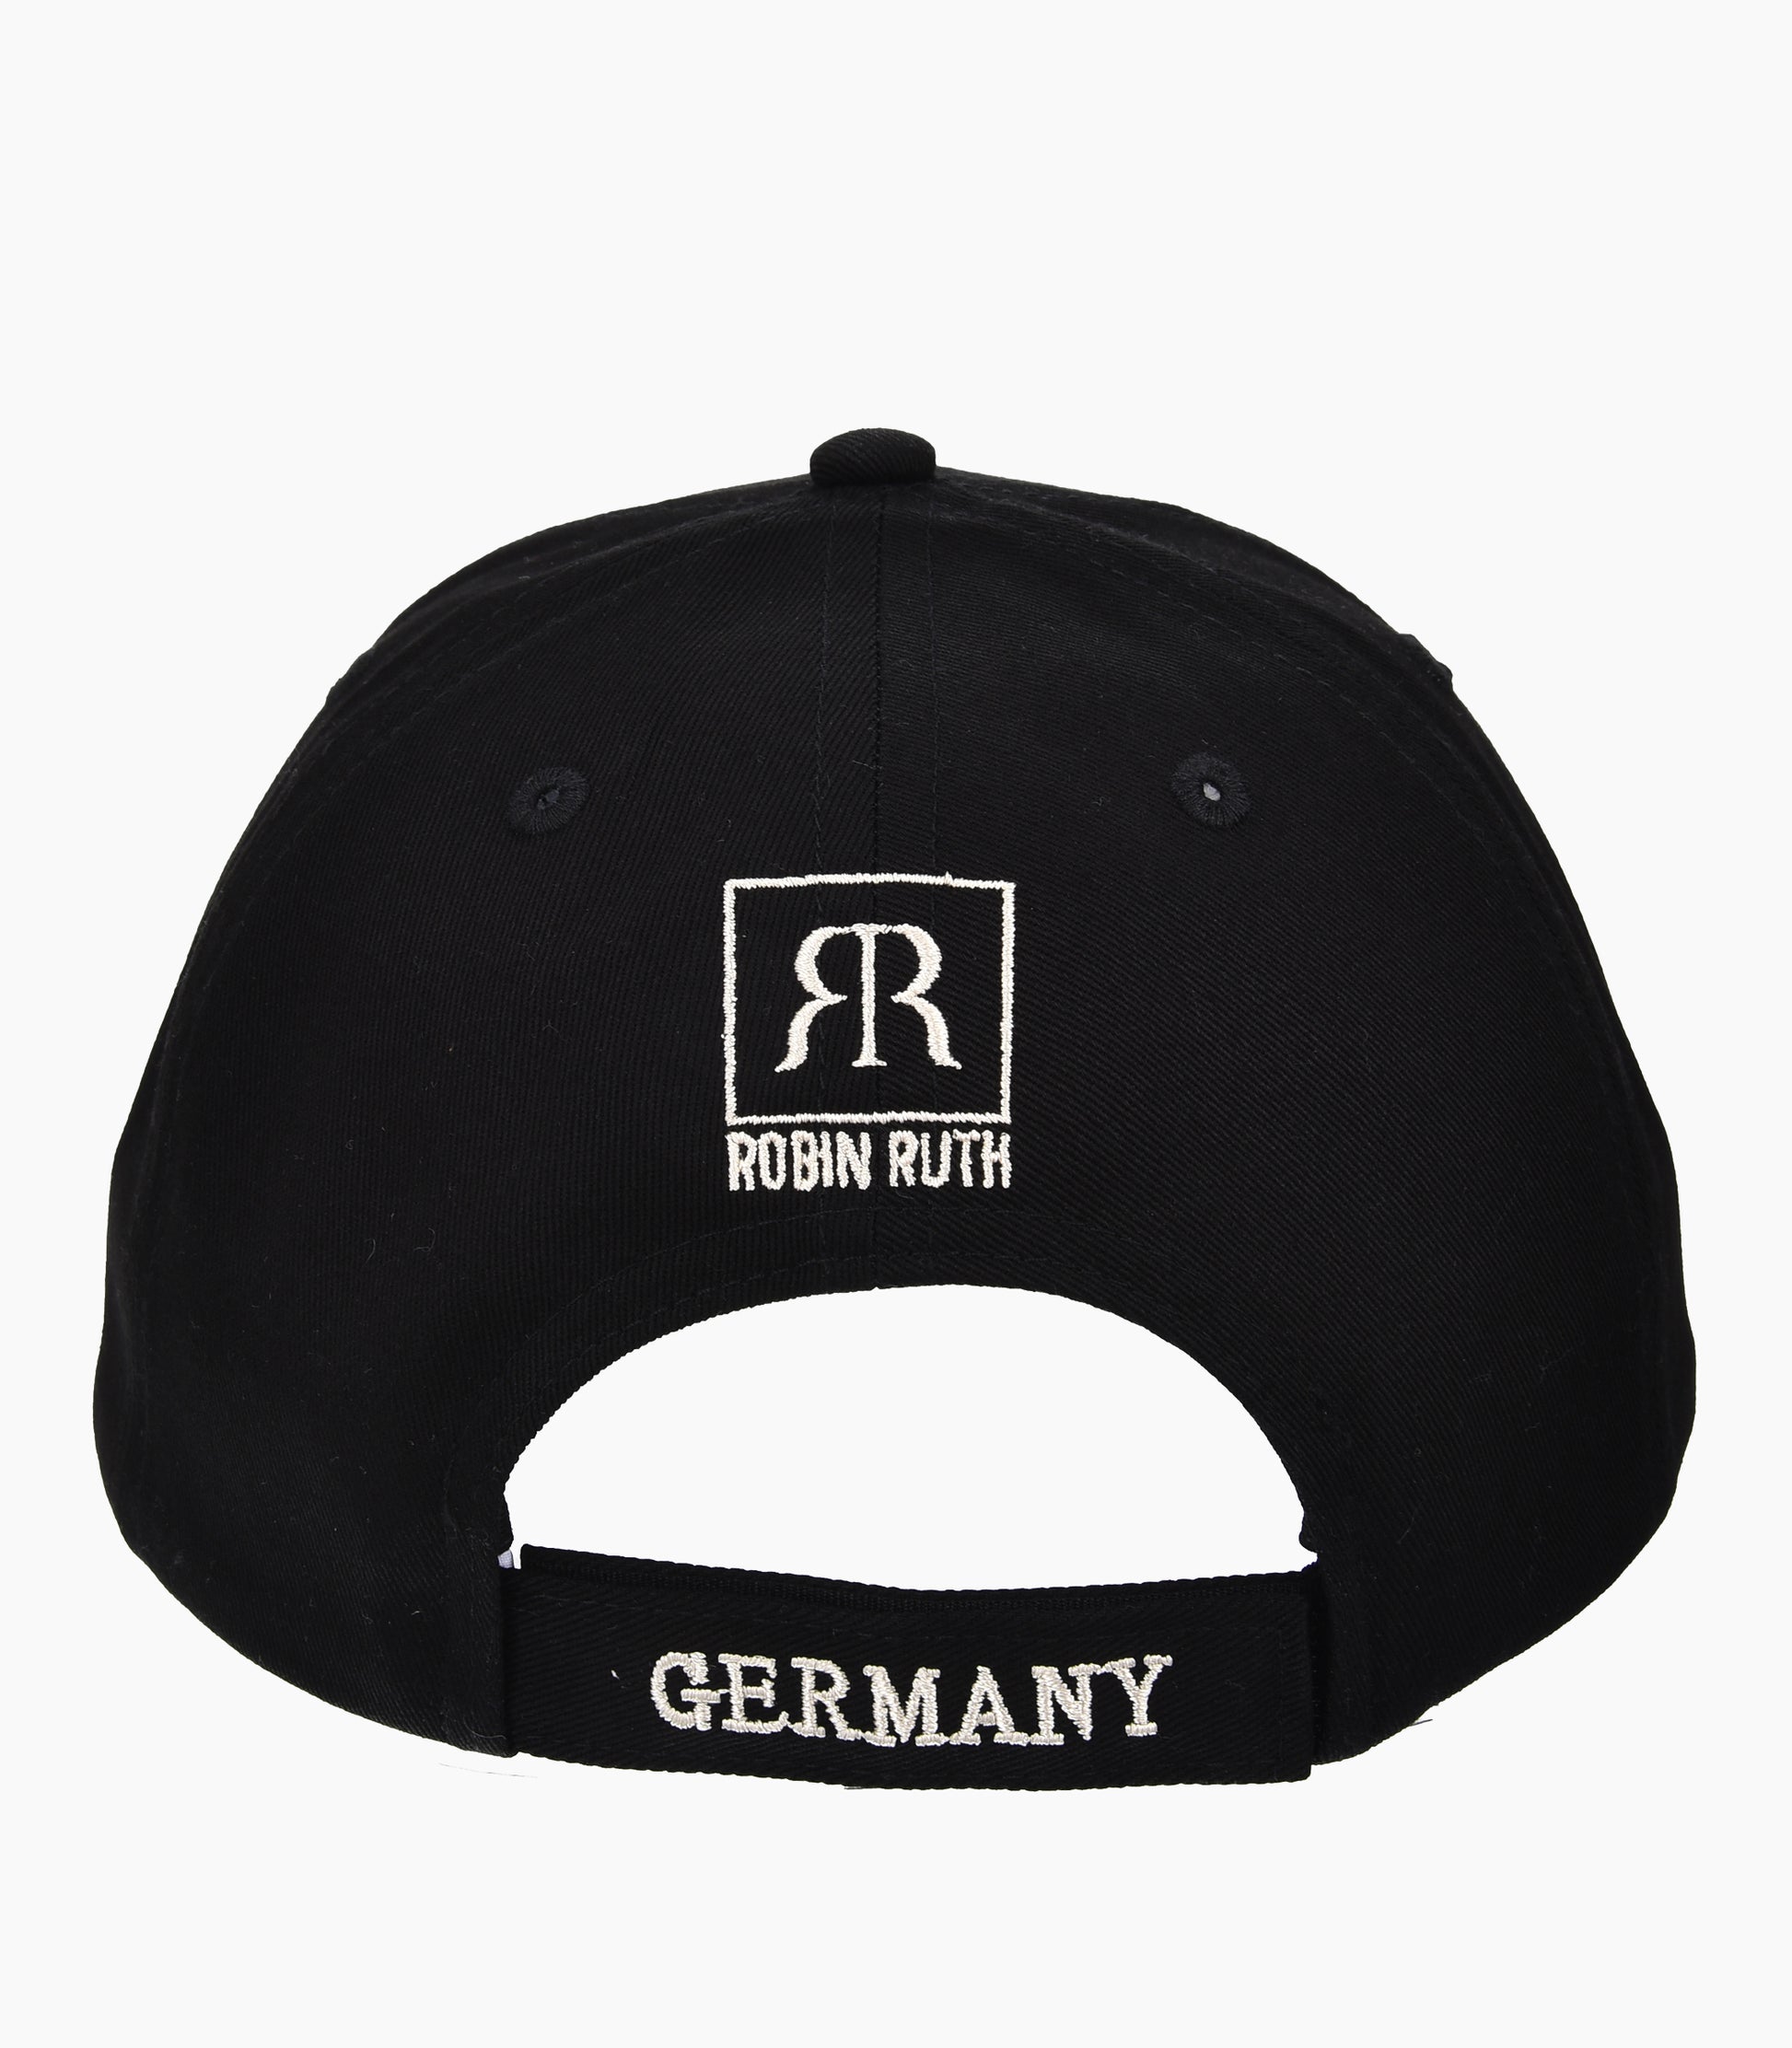 Germany Cap - Robin Ruth